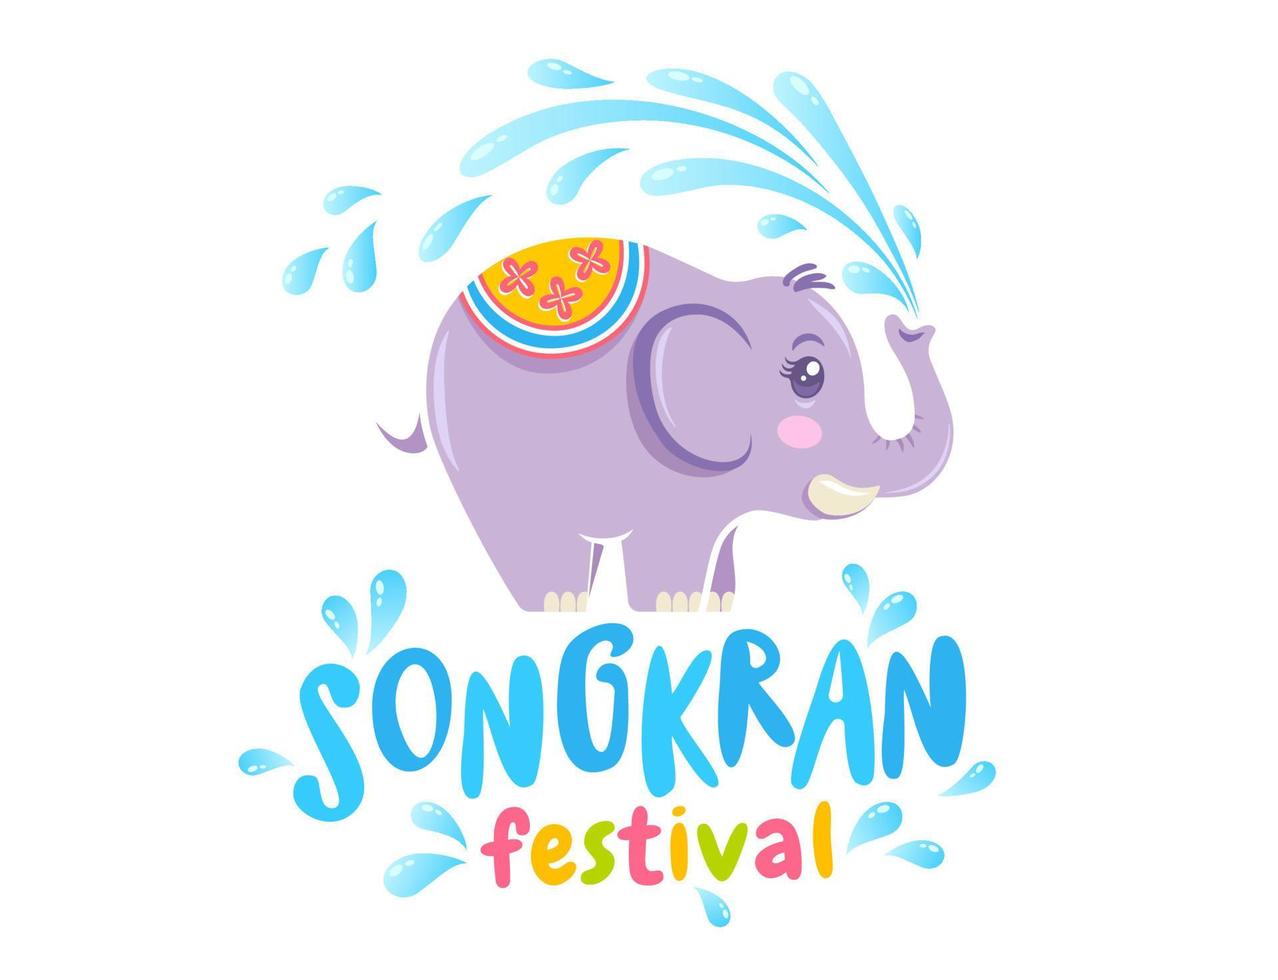 vektor logotyp för songkran festival i thailand med elefant på isolerad bakgrund. emblem för songkran vattenfestival.